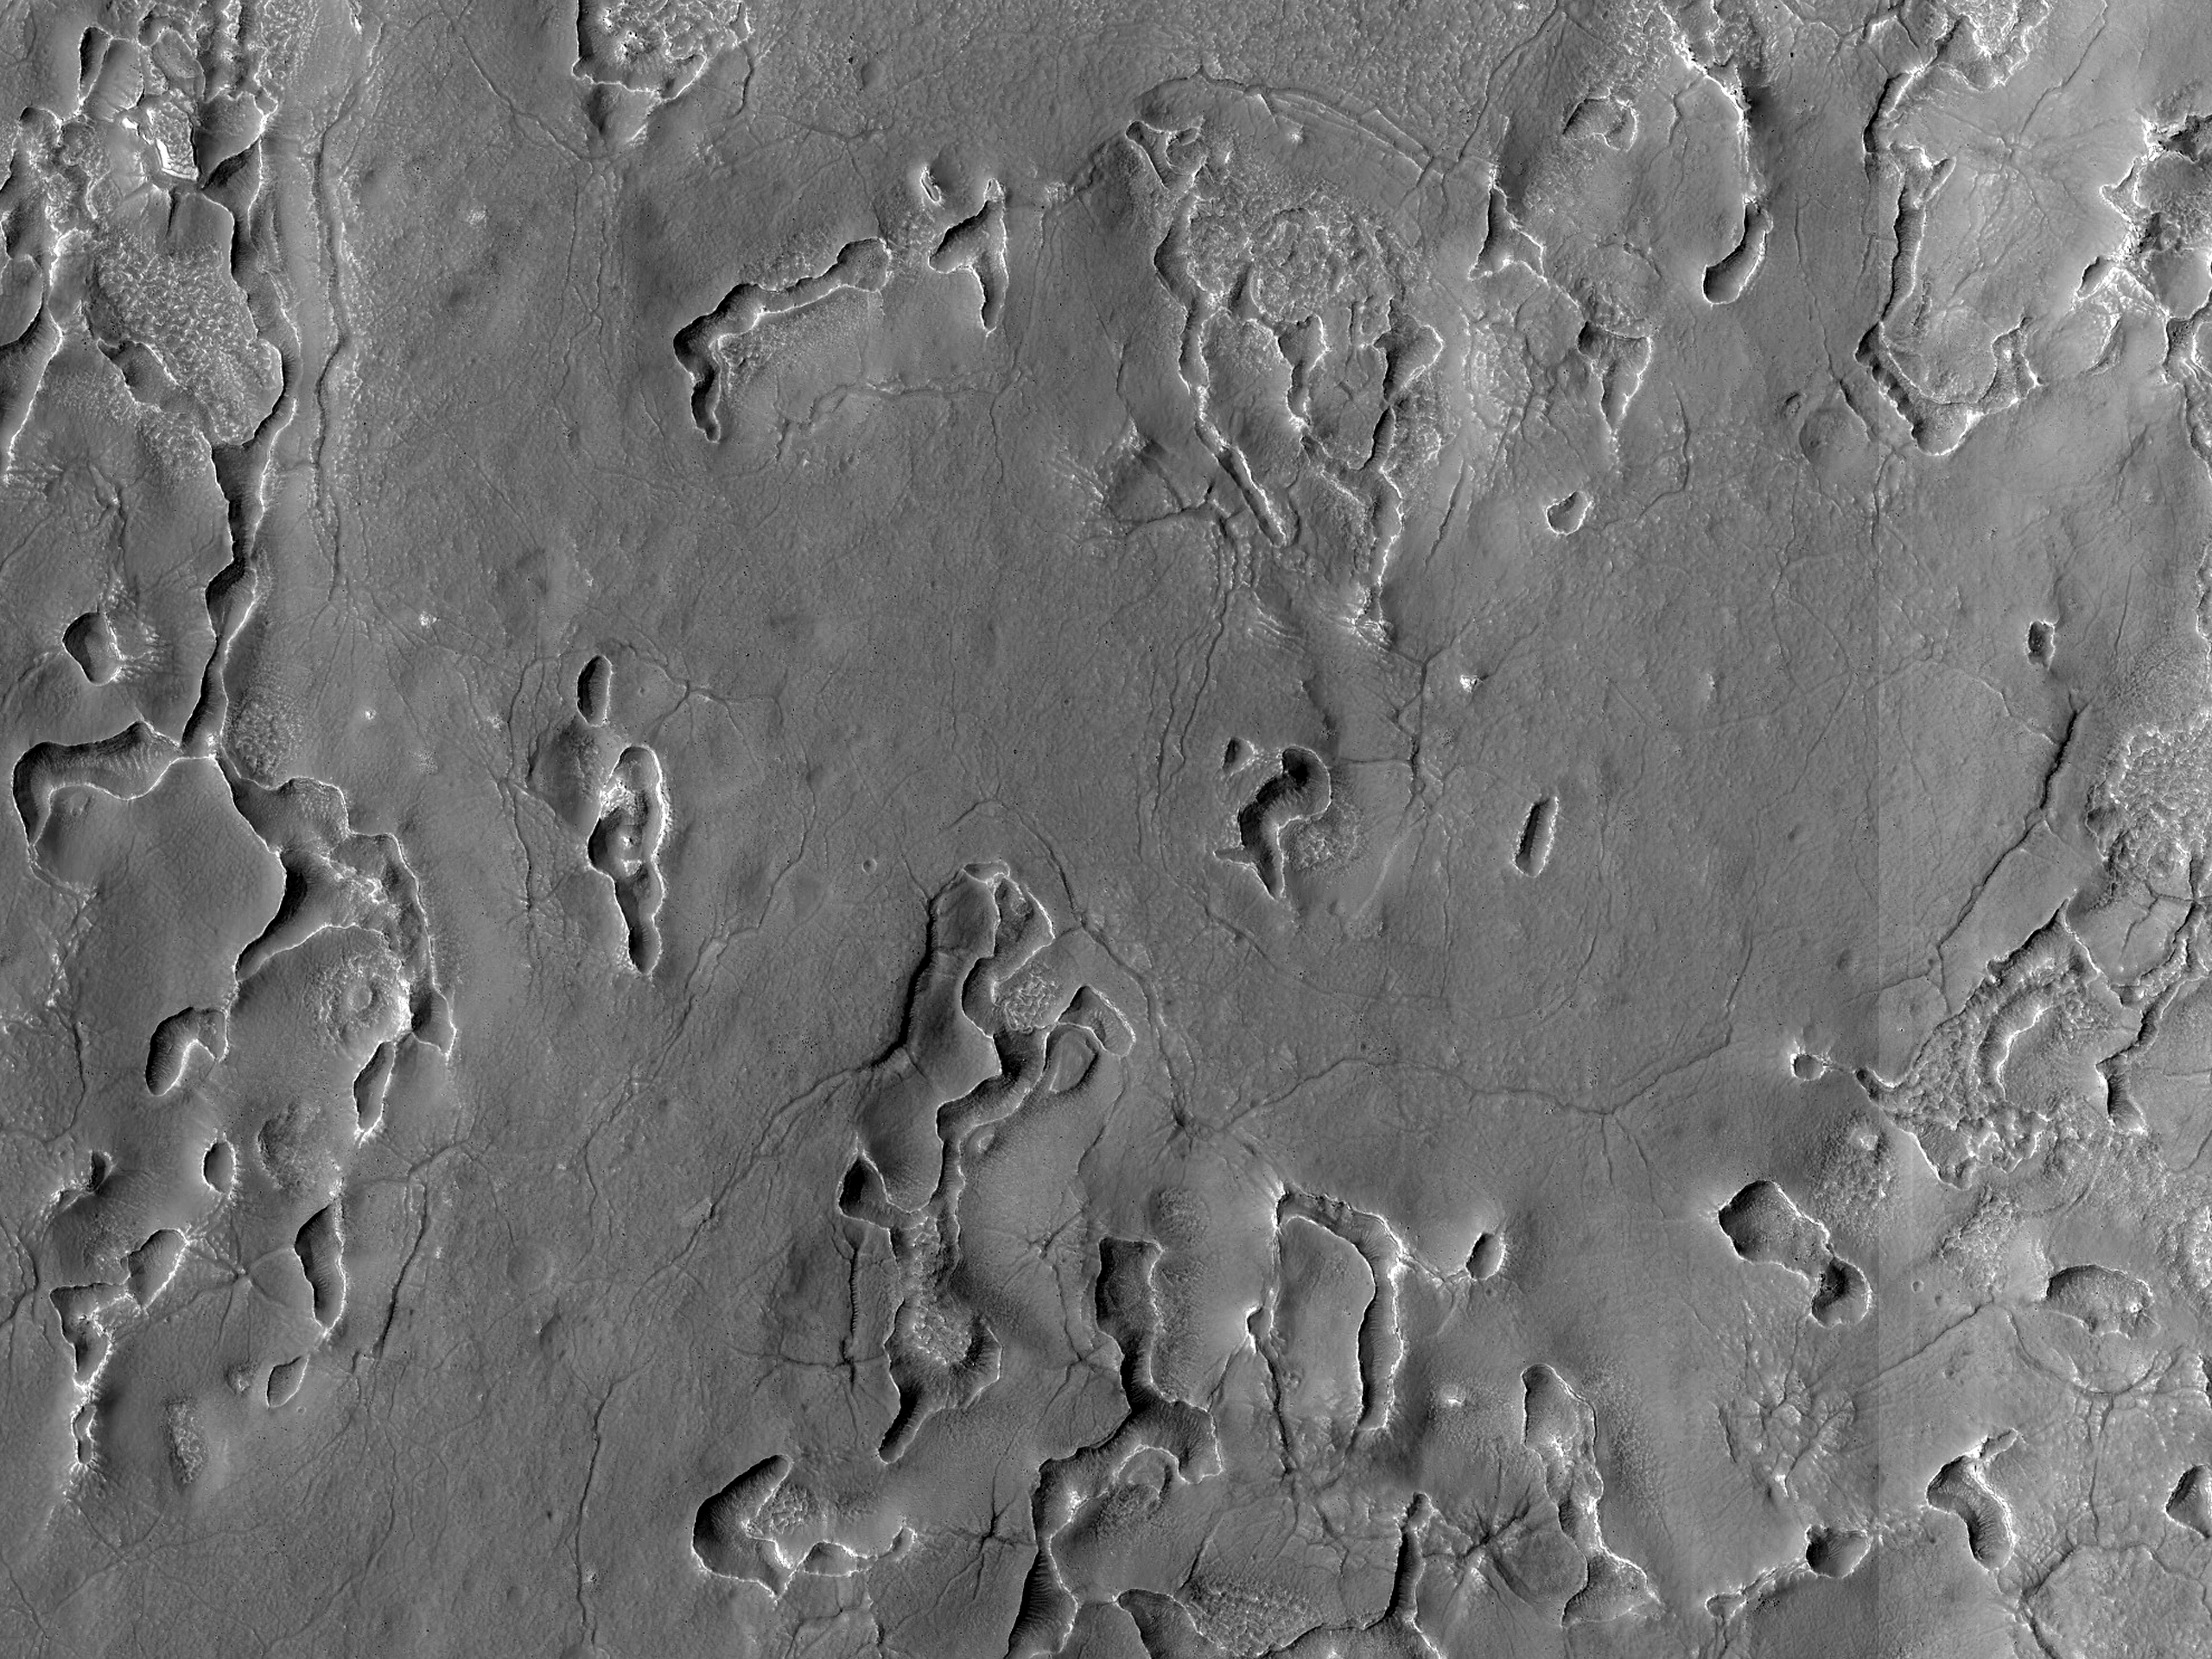 Fenditure brevi e strette sulla superficie di Deuteronilus Mensae